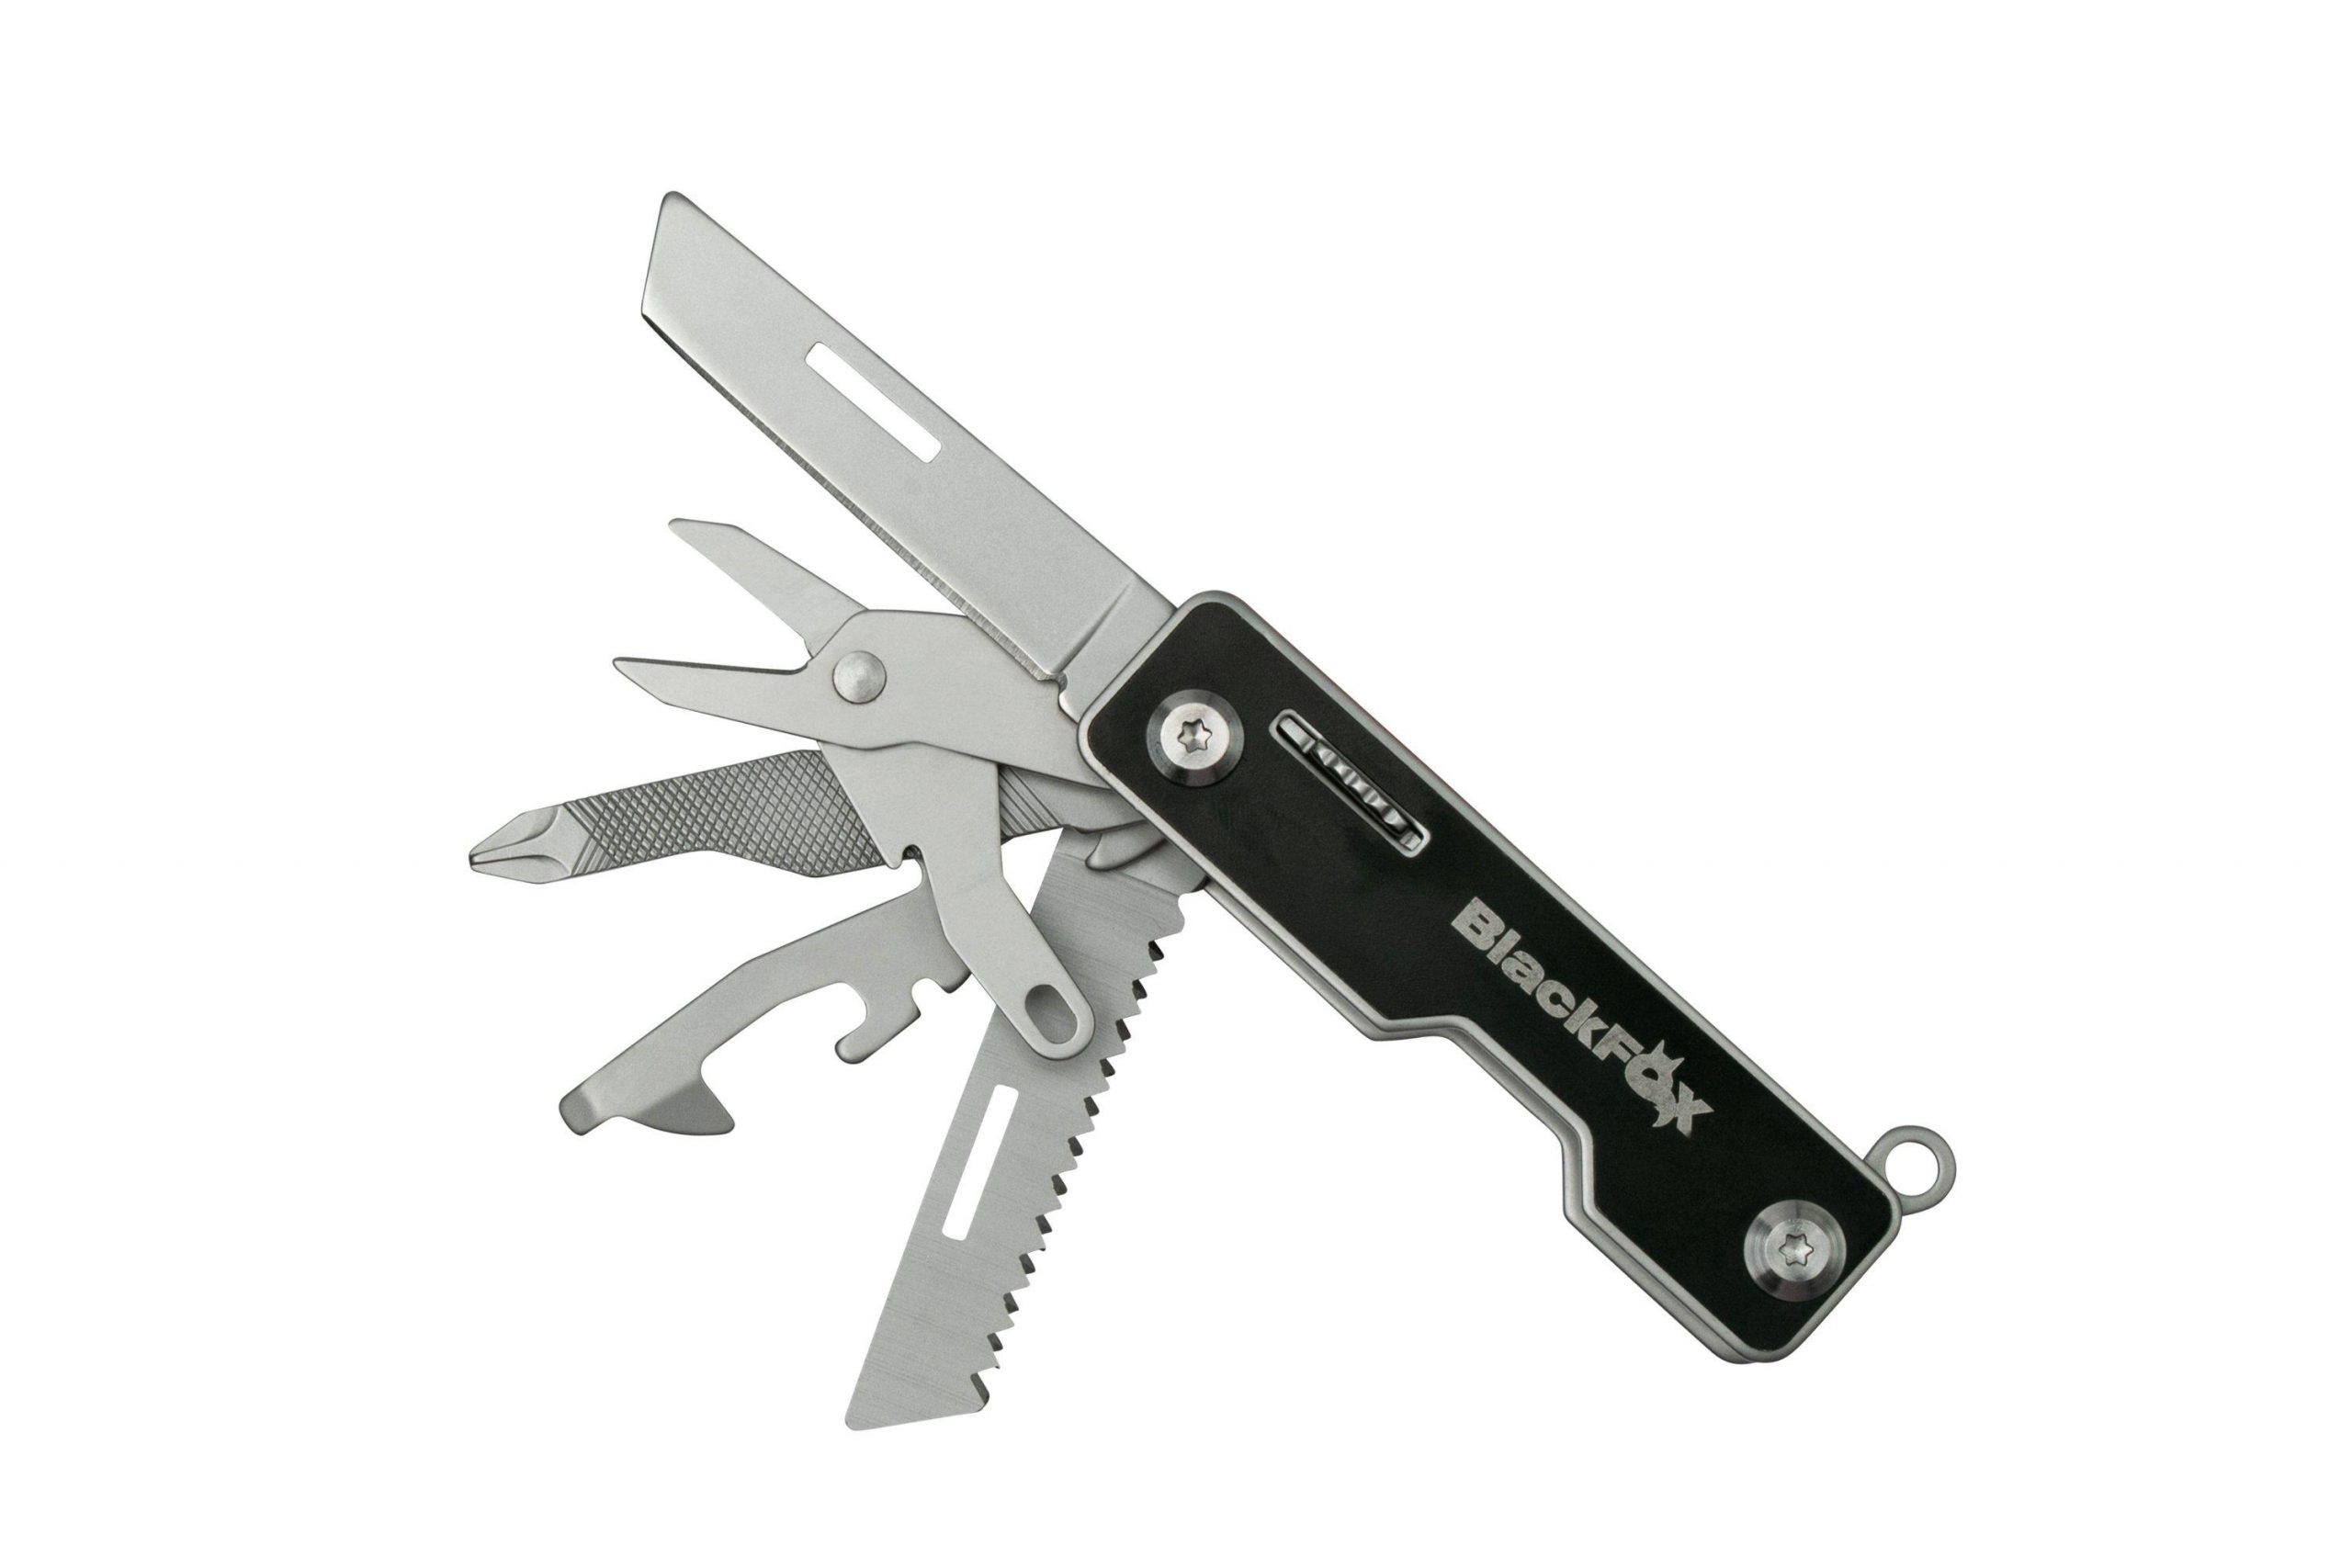 Multifunction knives: Black Fox Pocket Boss multi-tool